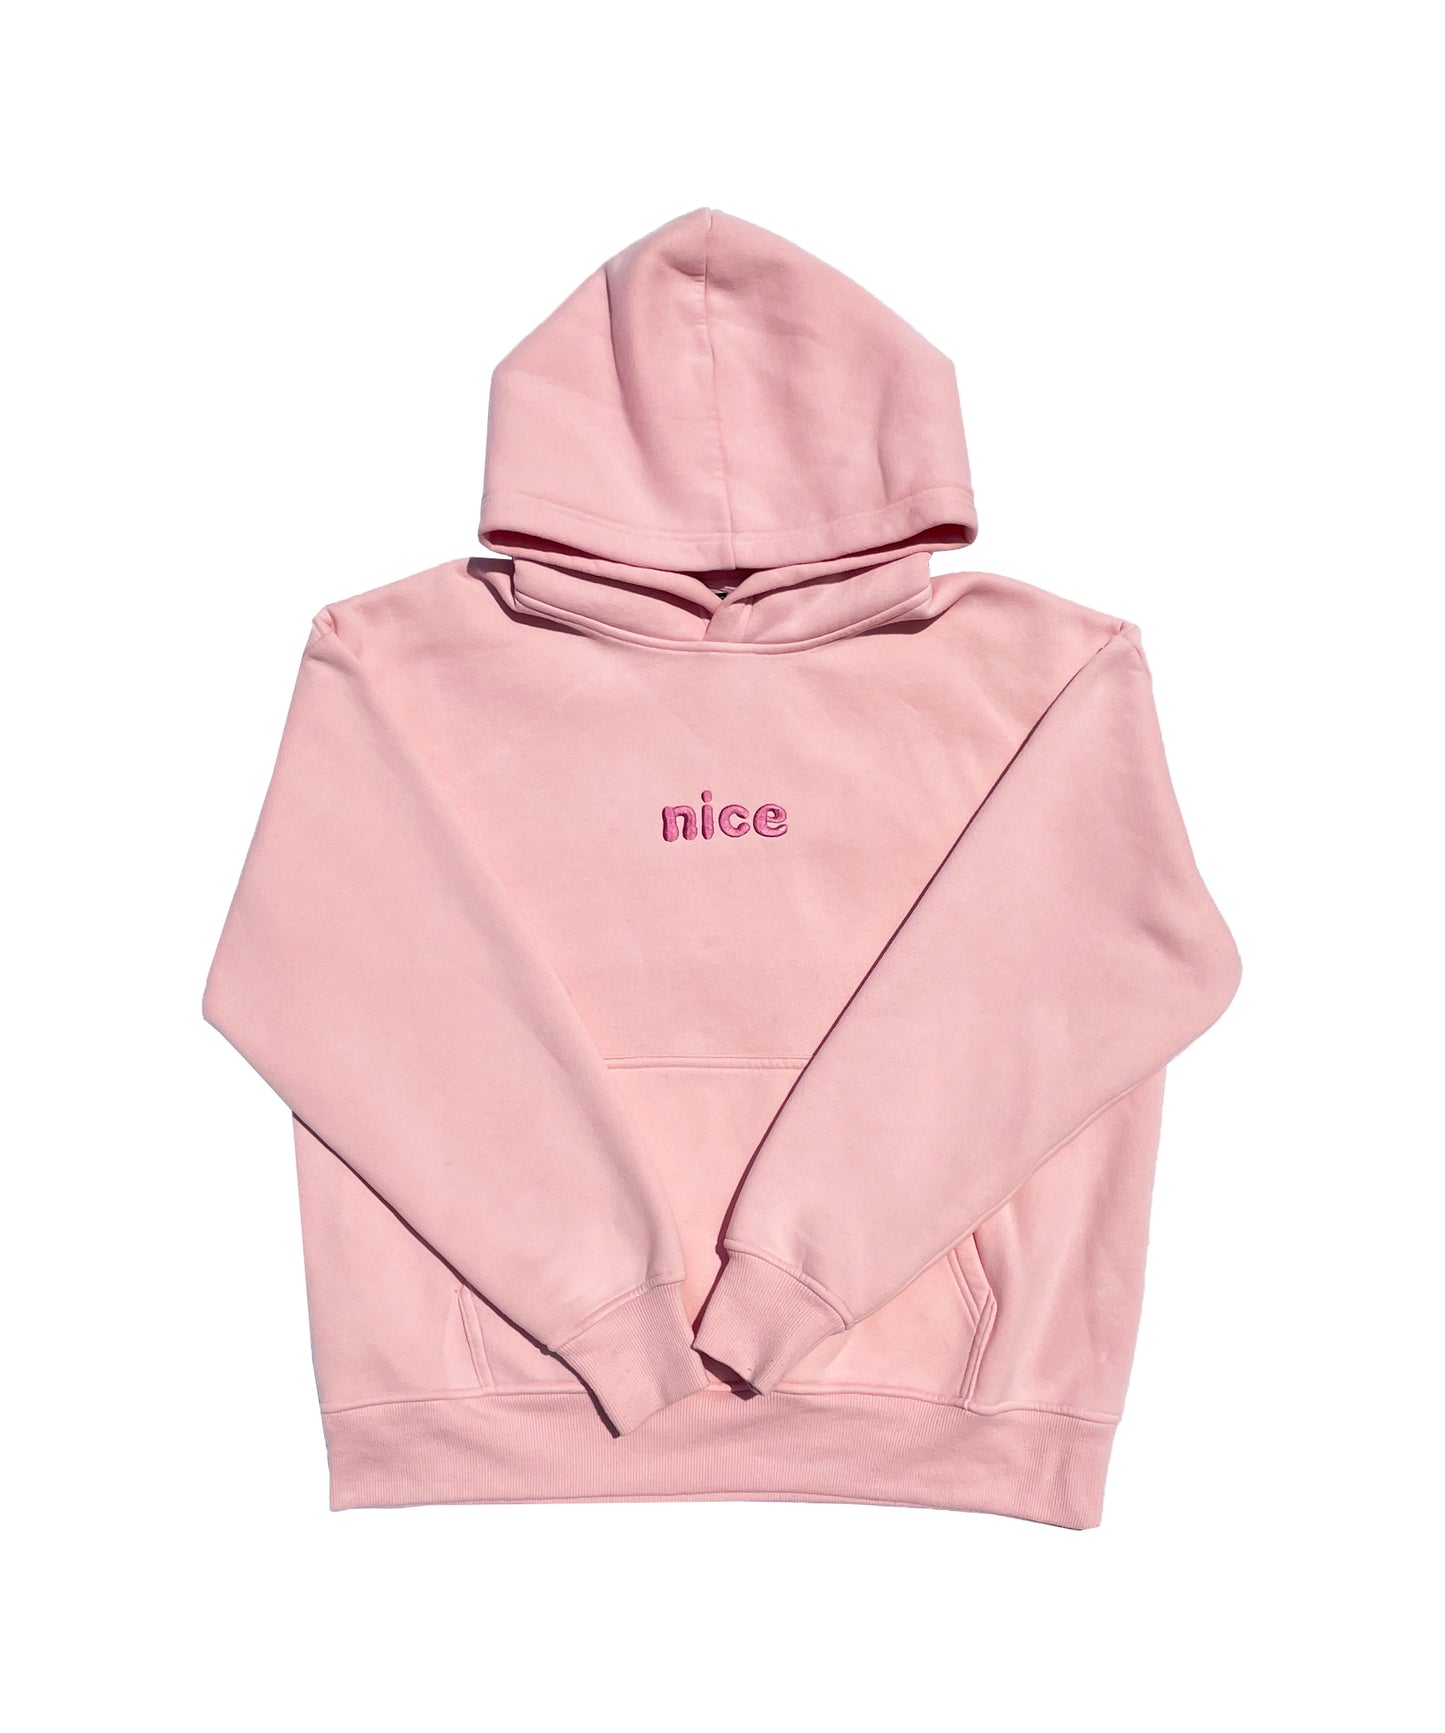 "nice" hoodie